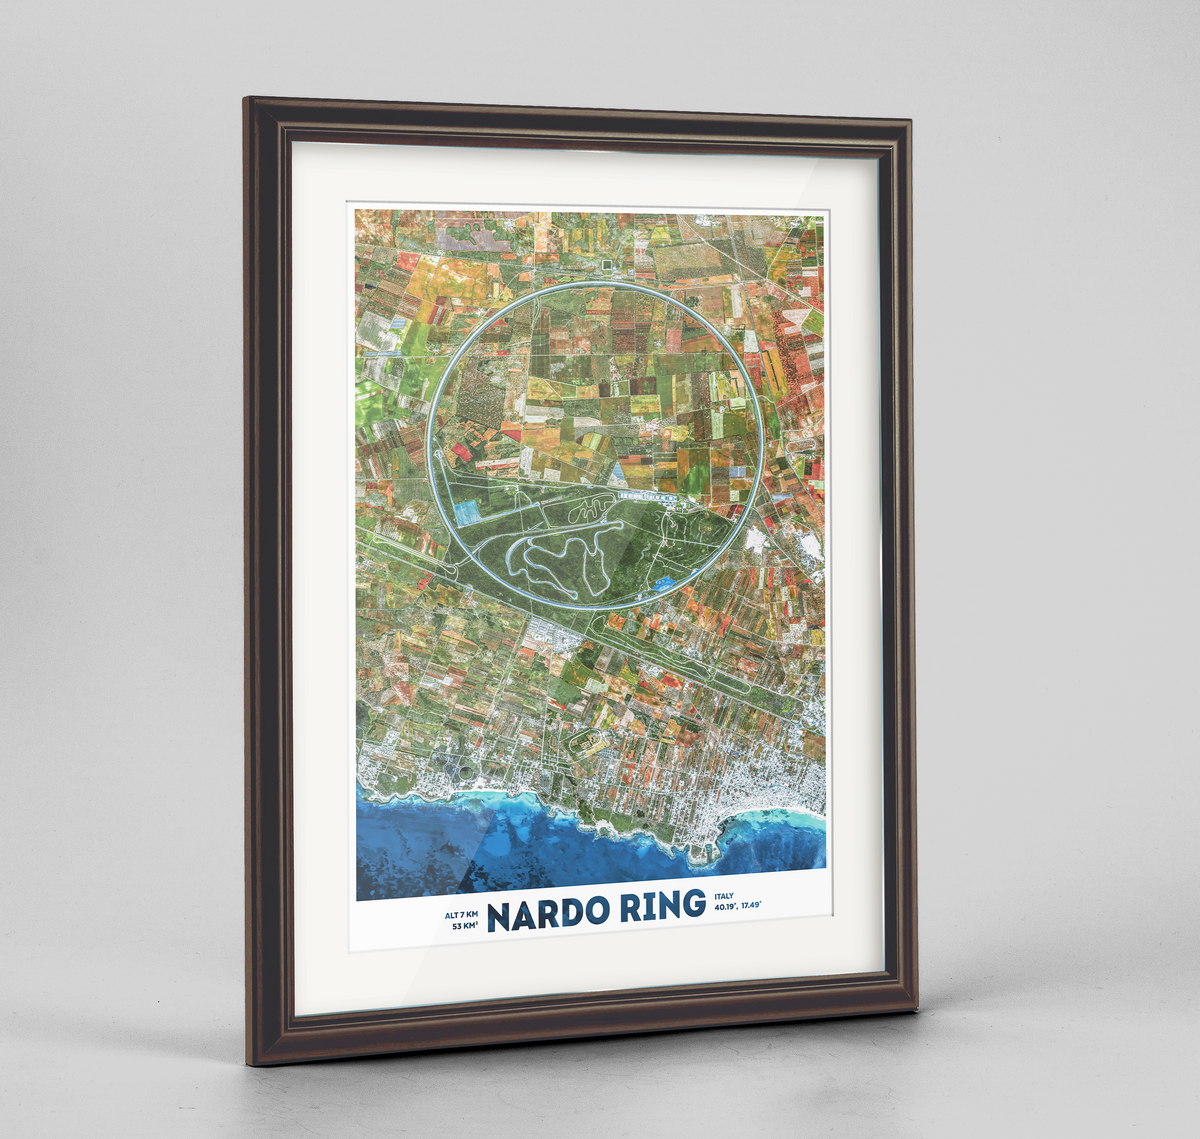 Nardo Ring Earth Photography Art Print - Framed